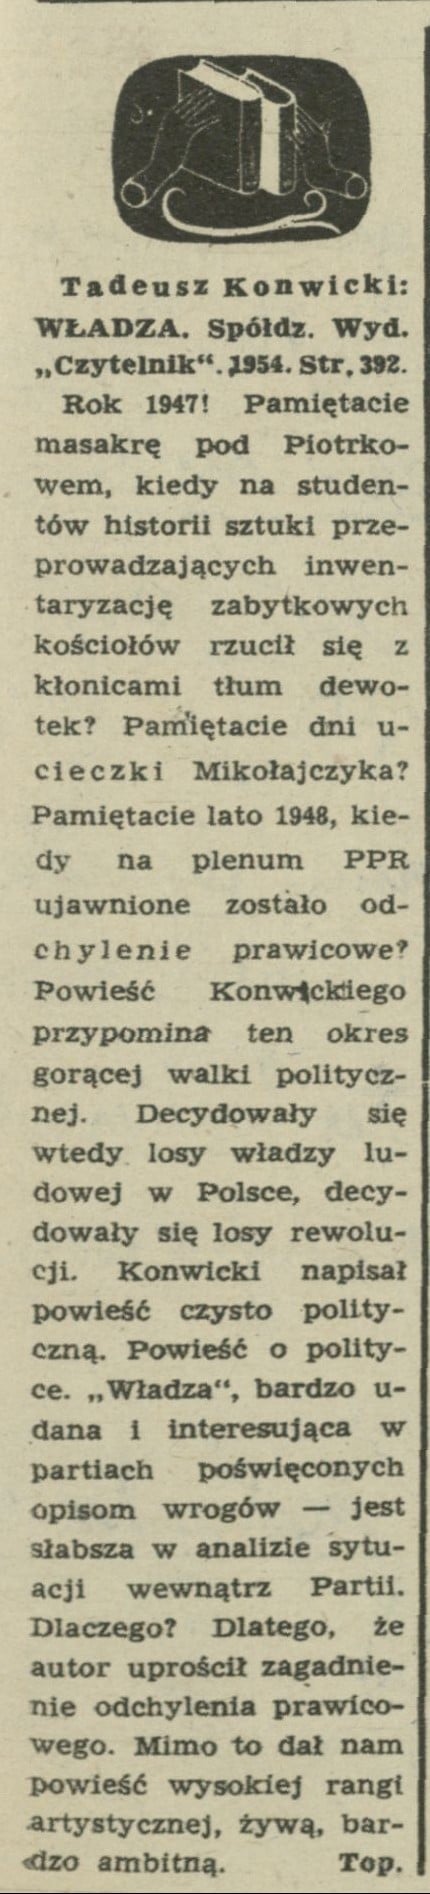 Tadeusz Konwicki "Władza"